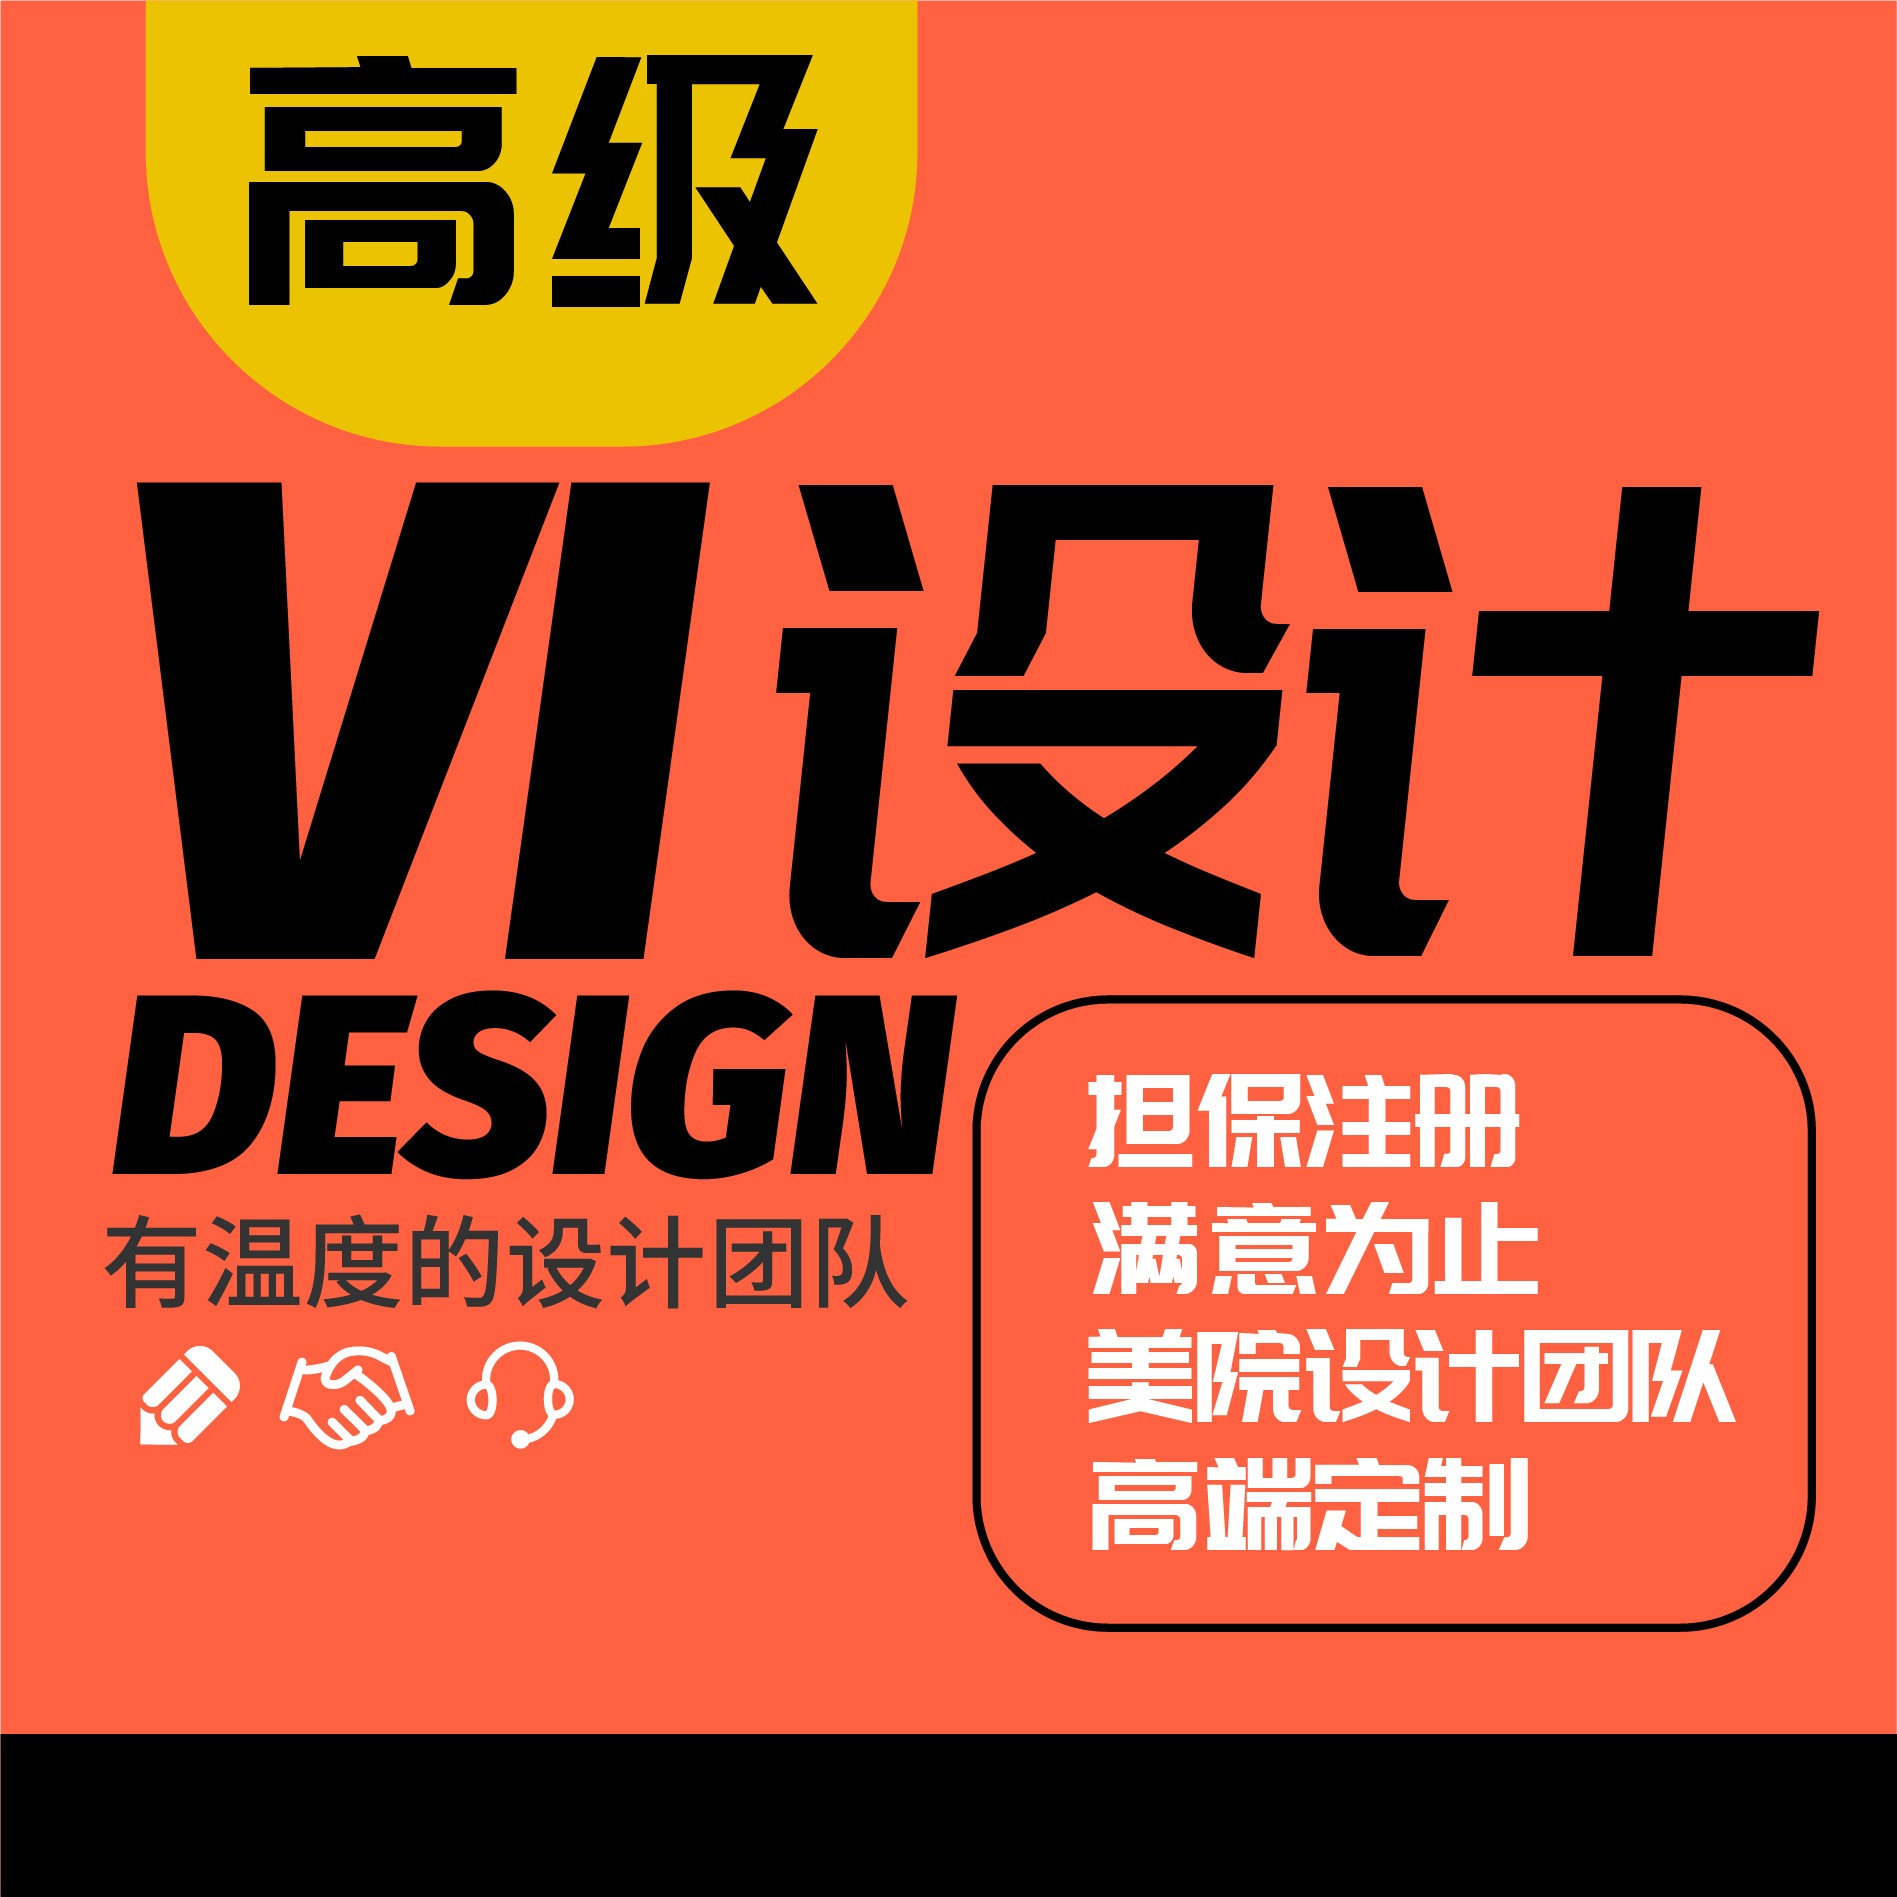 科技企业**行业vi设计公司VI应用系统设计VIS设计升级